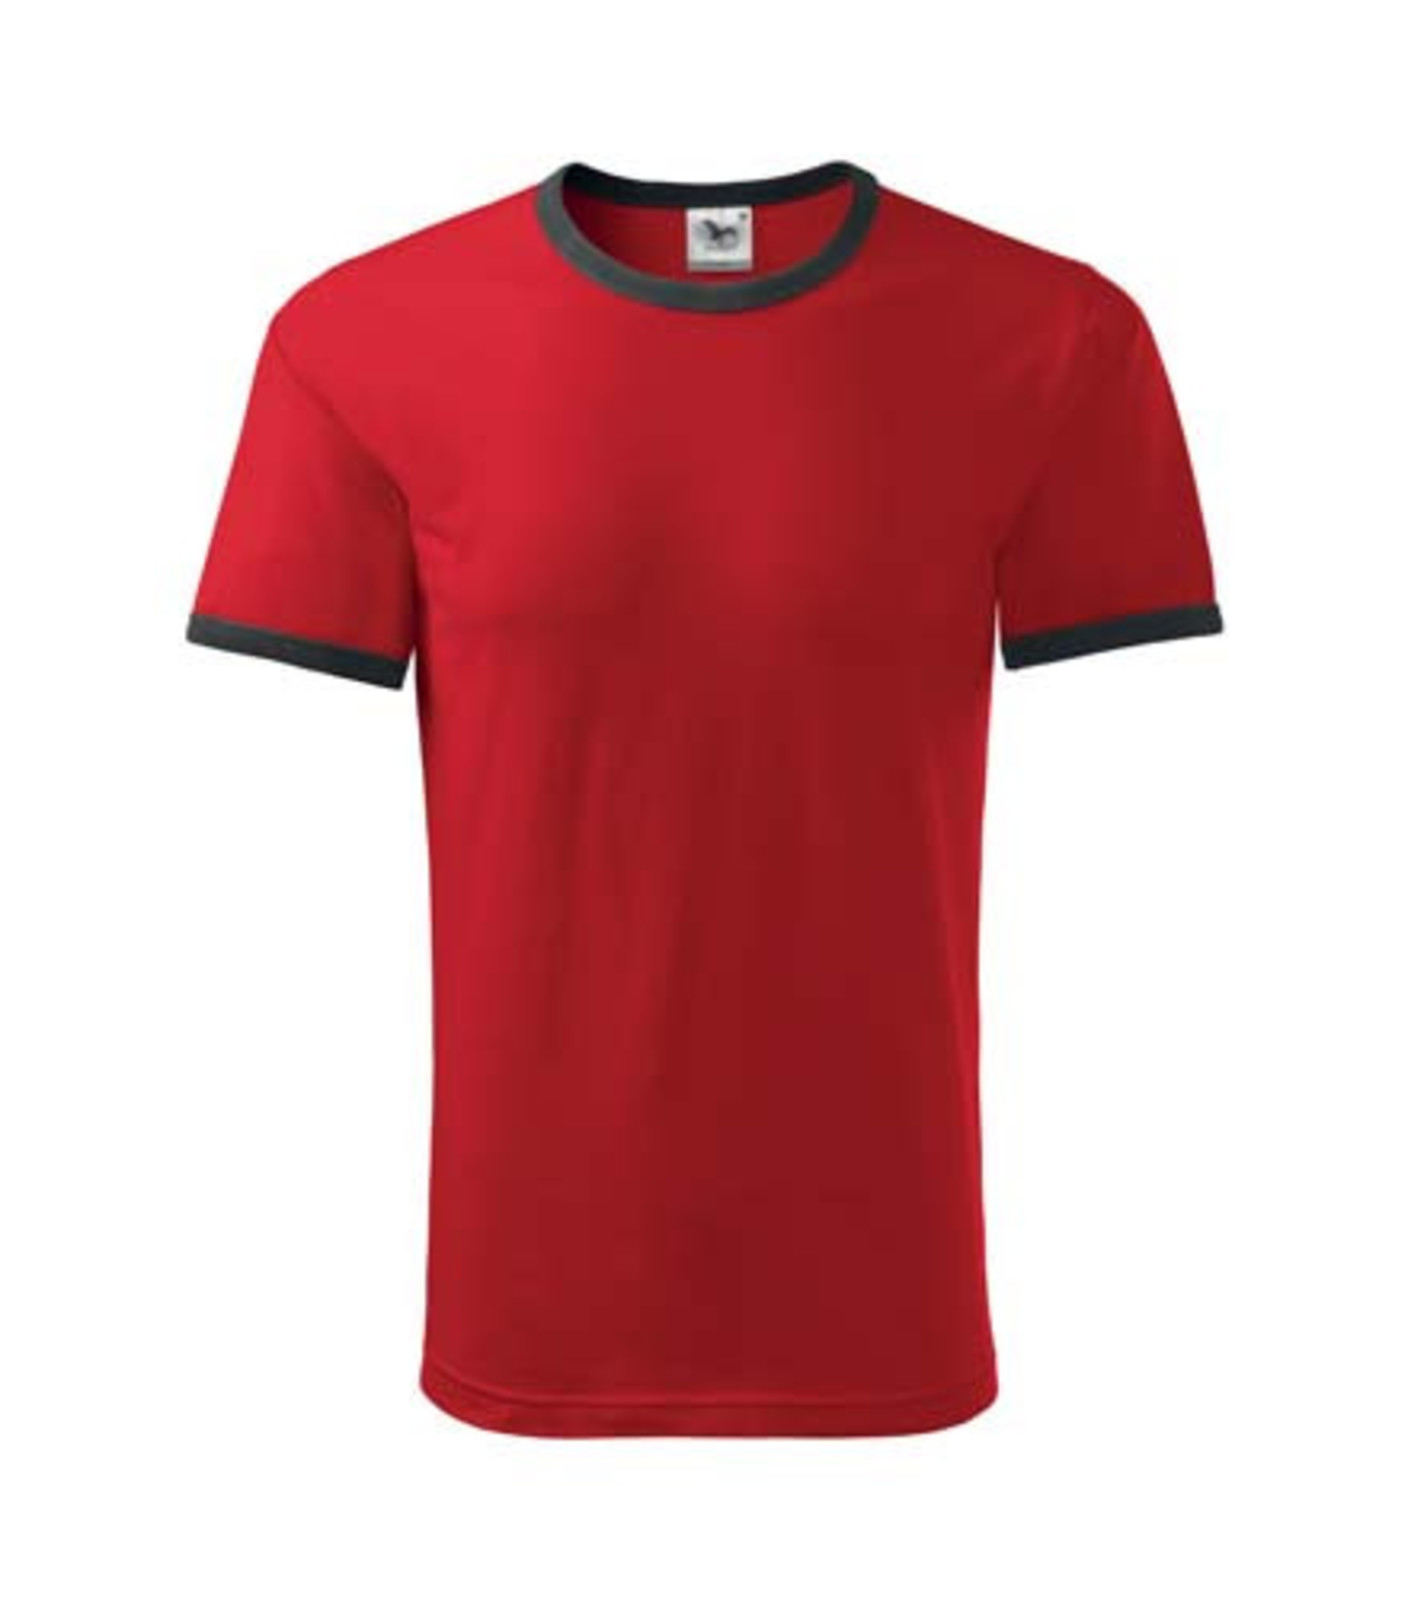 Unisex tričko Adler Infinity 131 - veľkosť: 3XL, farba: čierna/červená